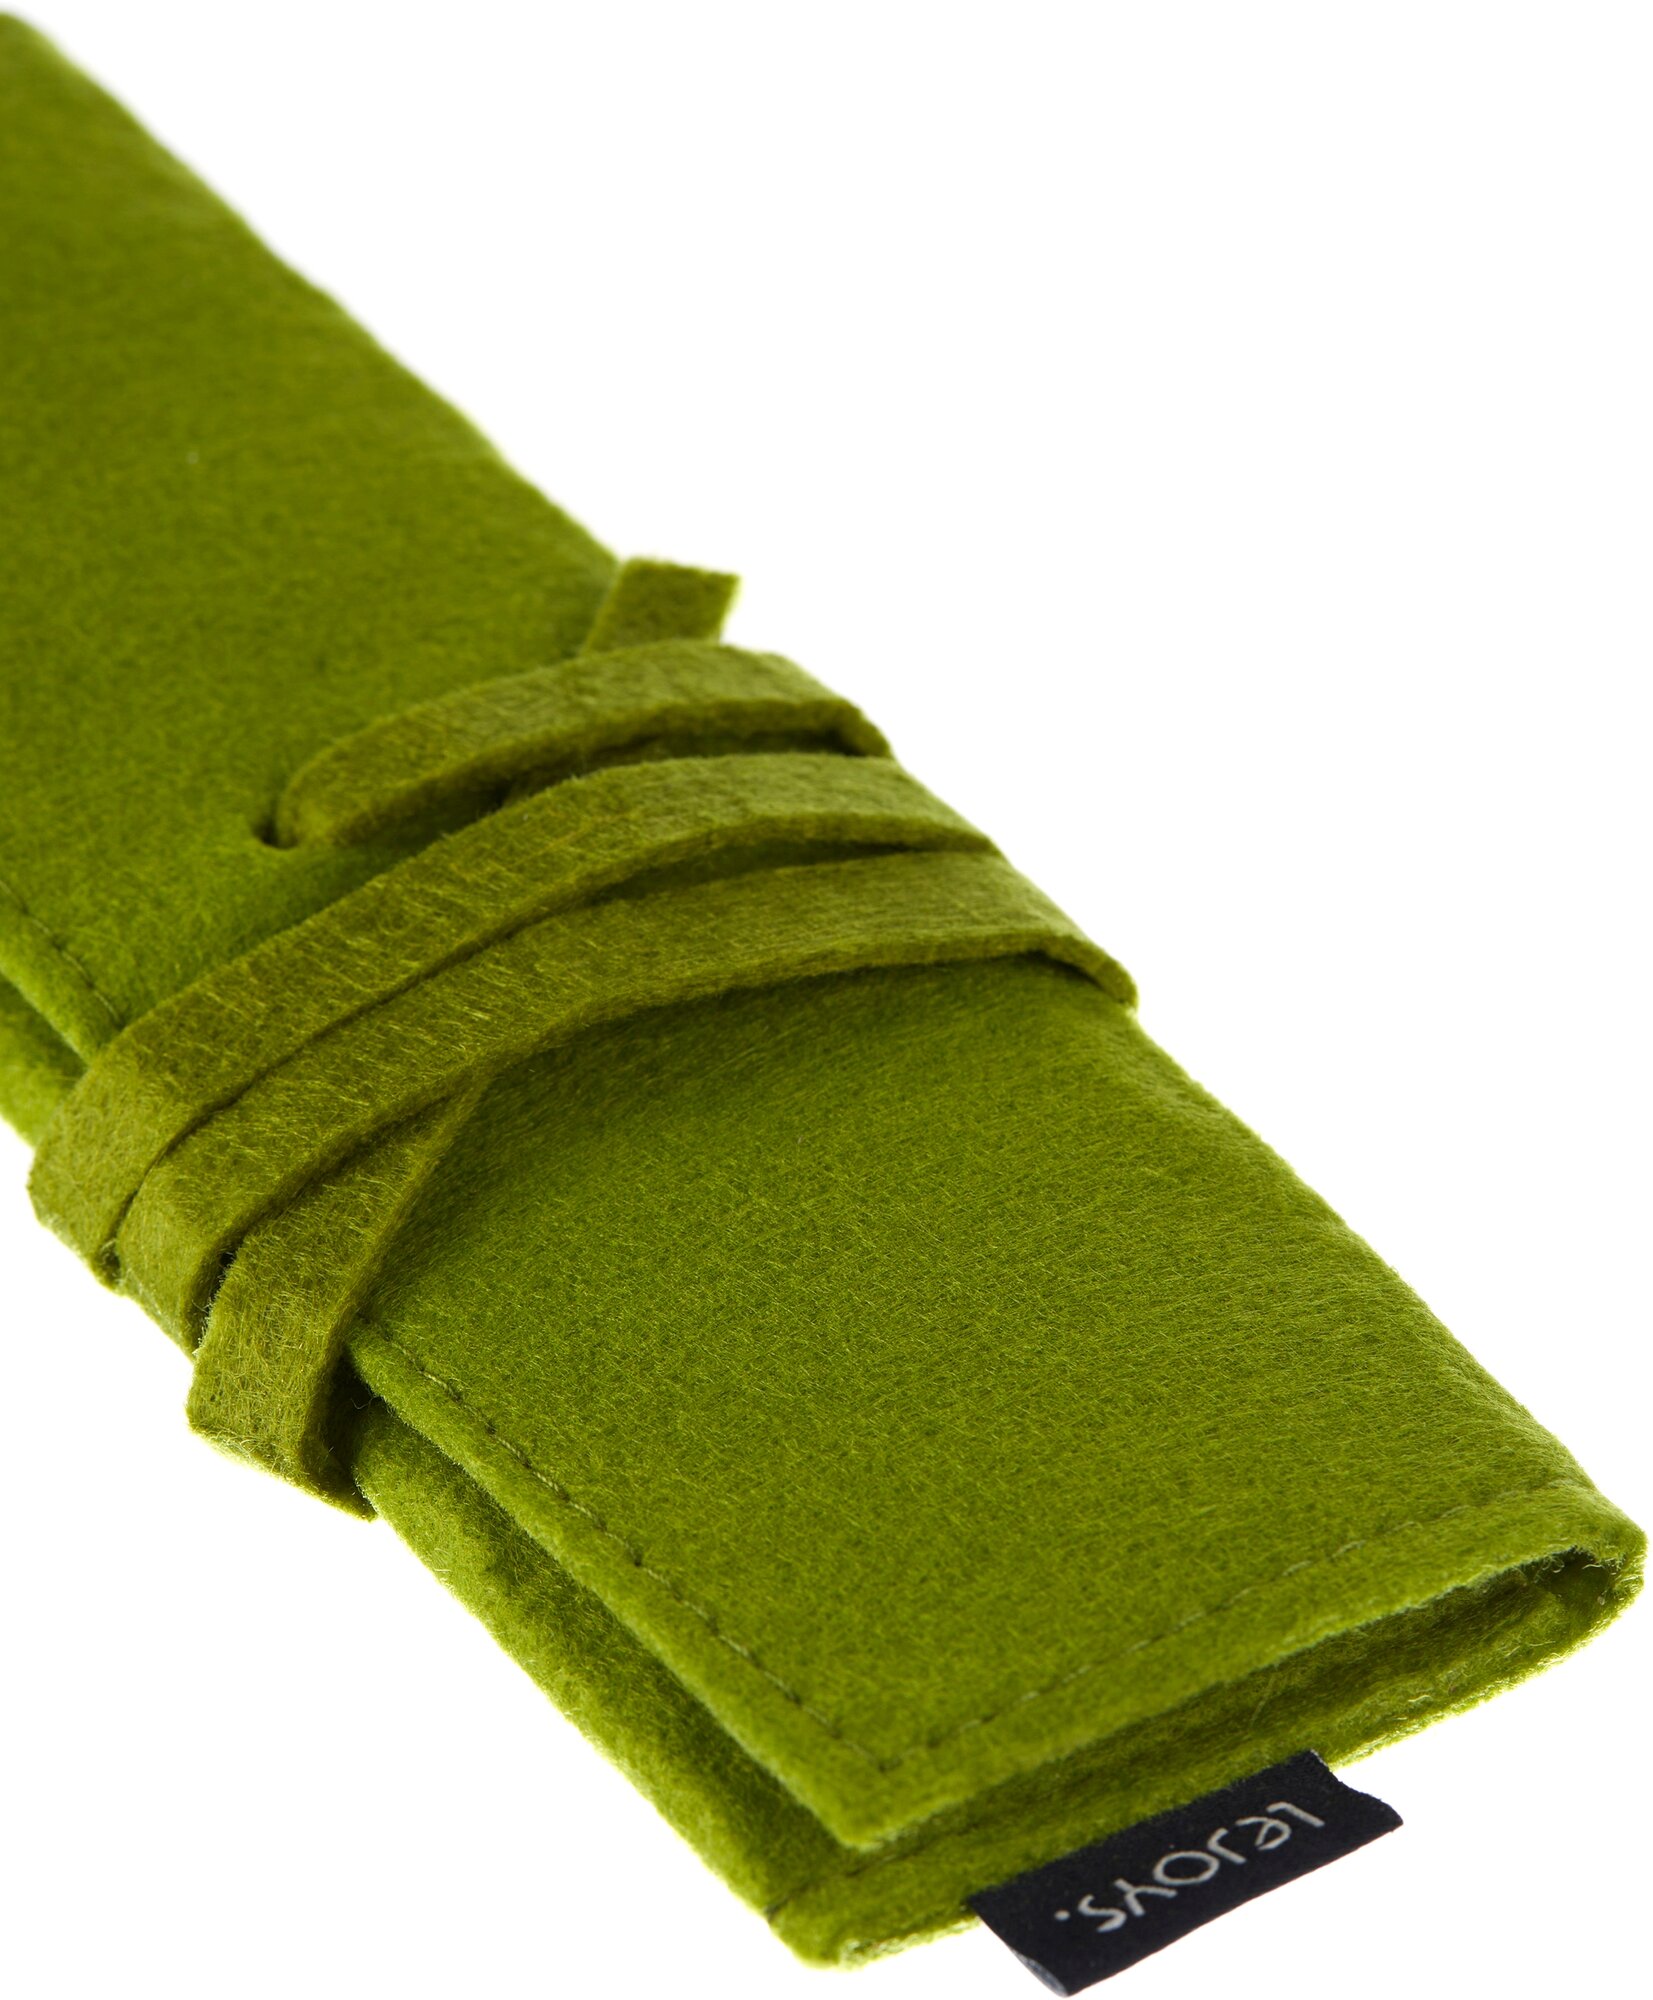 Пенал на завязке, зеленый, Lejoys, серия Felt, экологичный, стильный